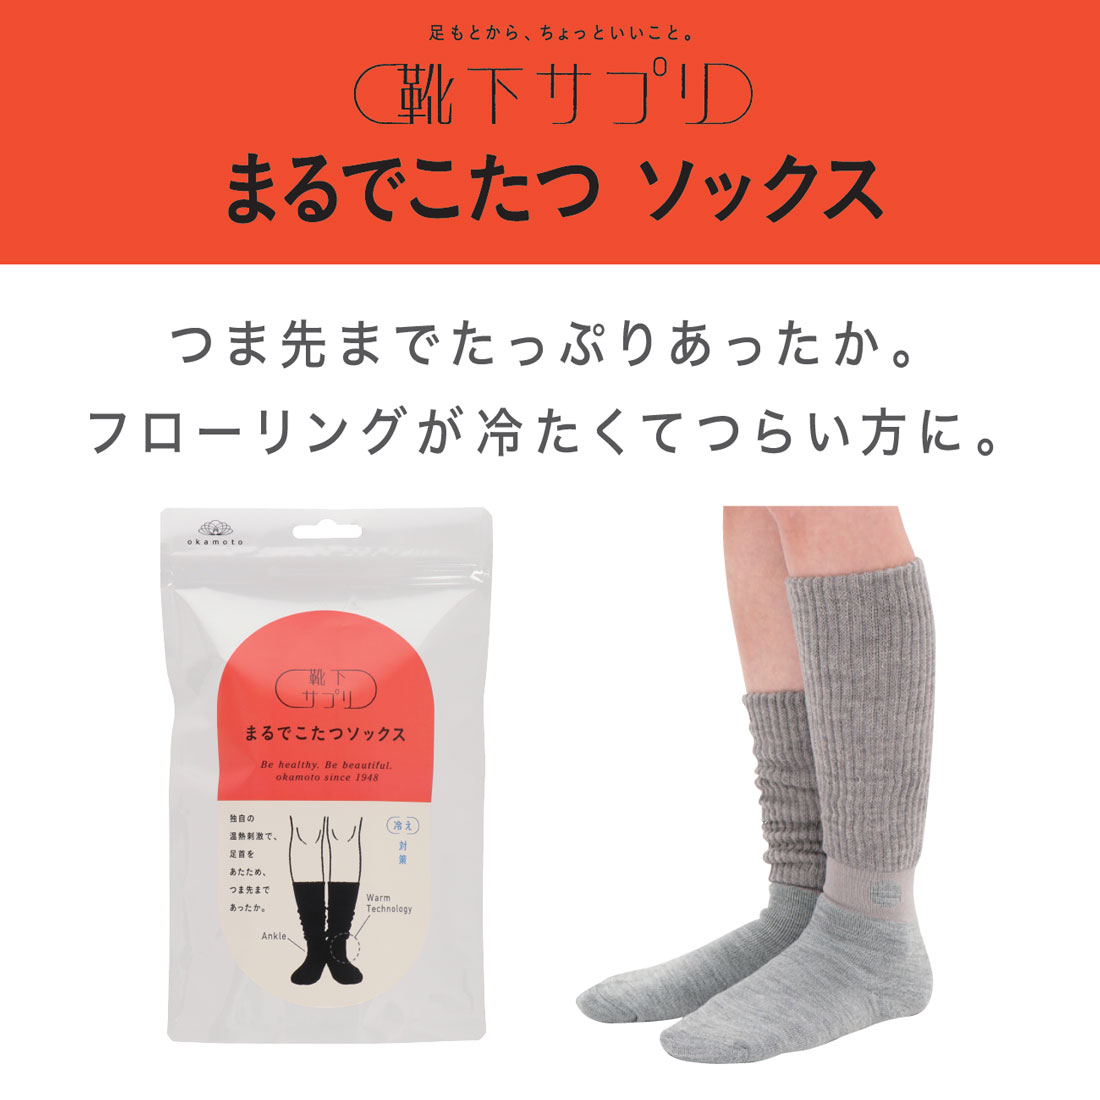 ( бесплатная доставка ) носки supplement ... котацу носки 23-25cm все 6 цвет холодозащитный женский салон носки носки Okamoto 